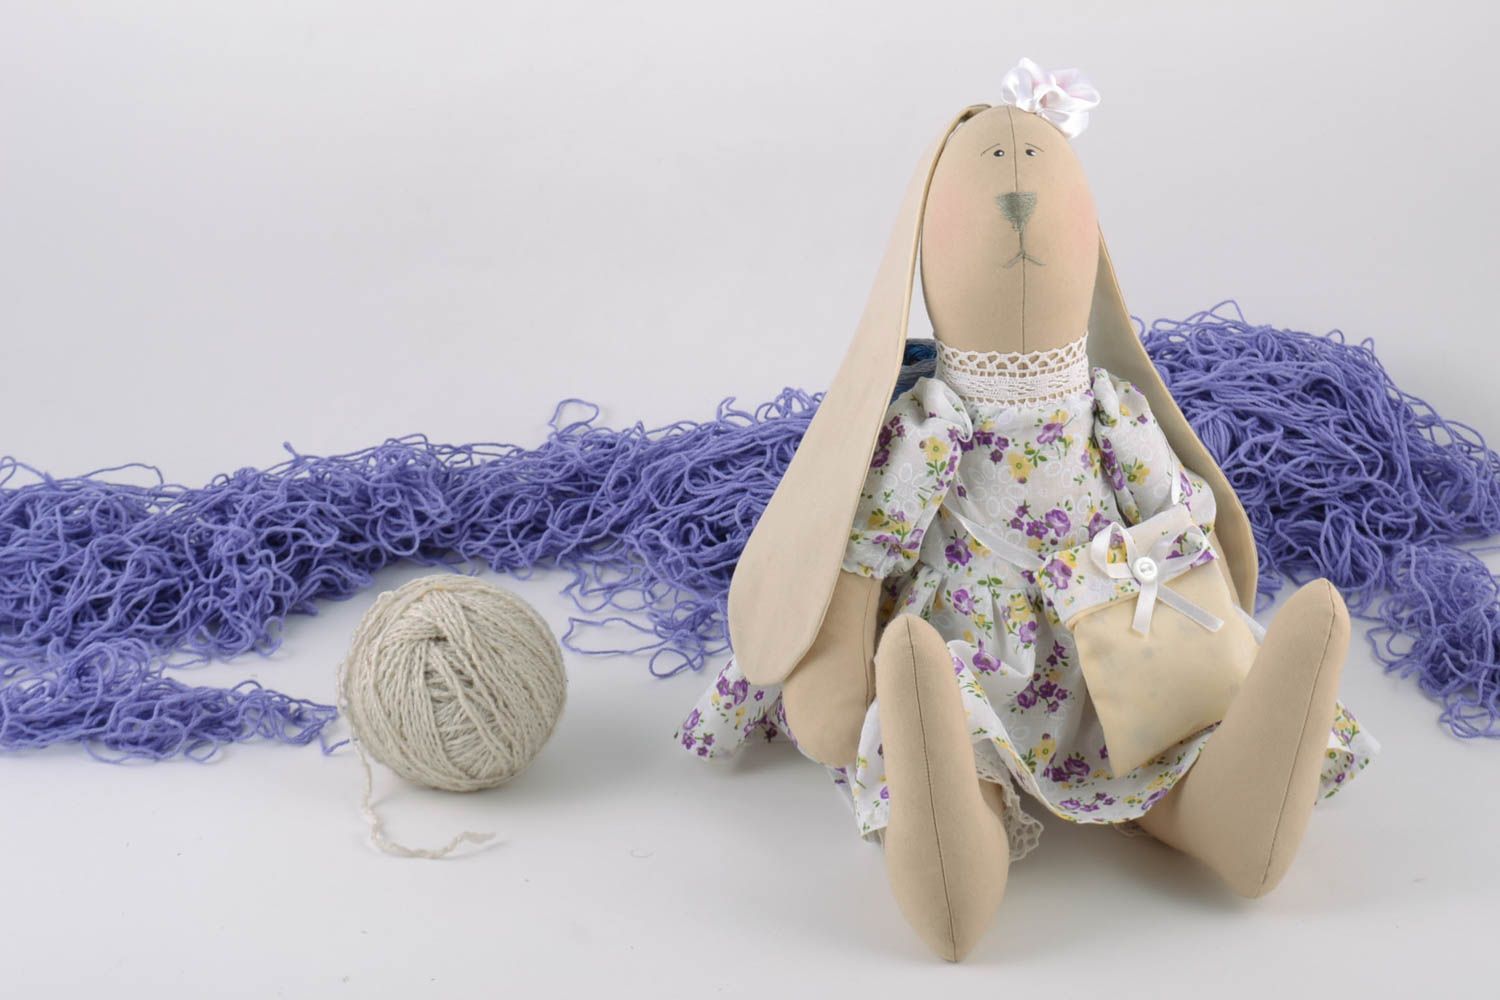 Textil Kuscheltier Hase im Kleid mit Tasche aus Leinen Spielzeug für Kinder  foto 1